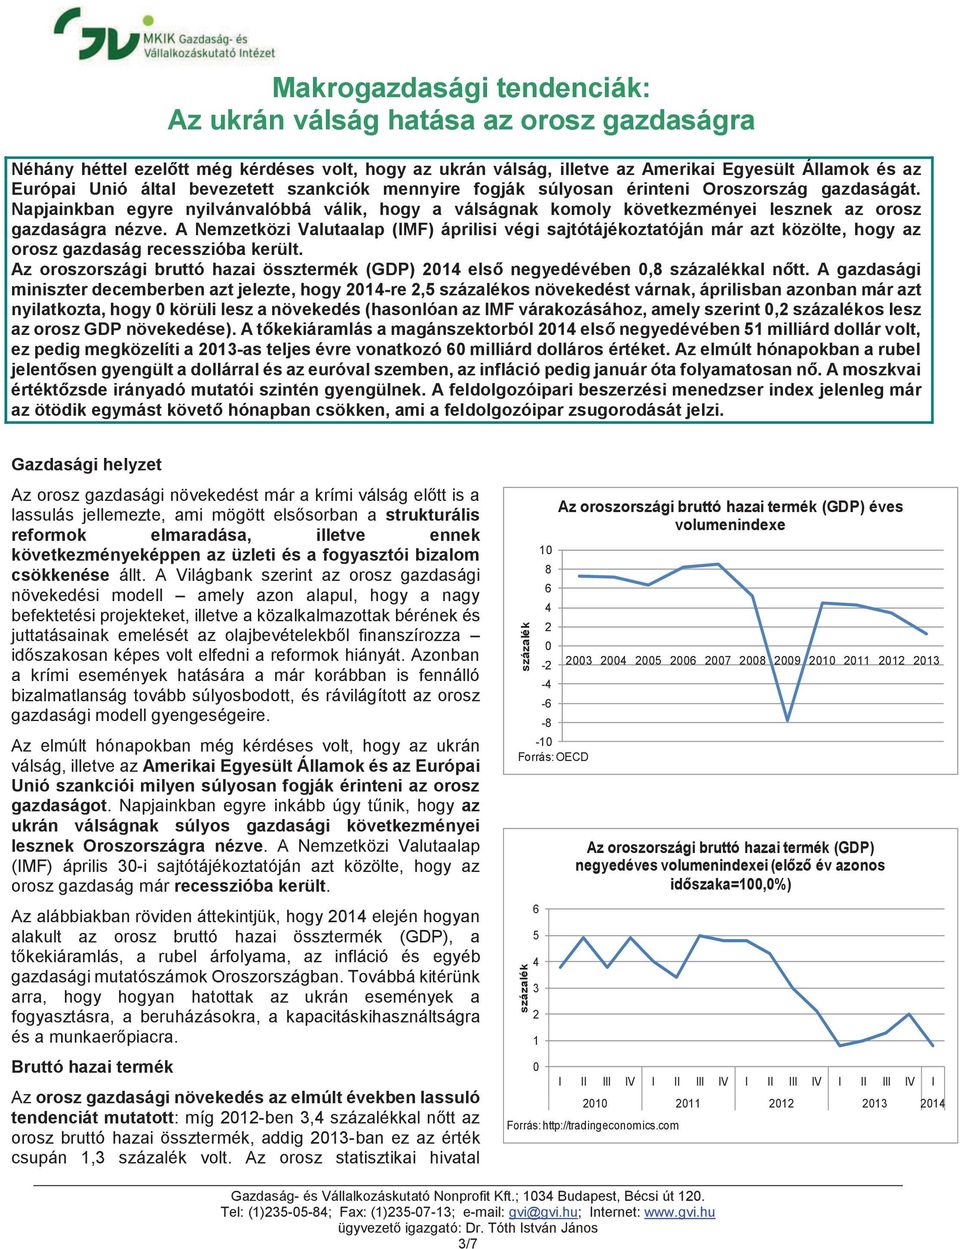 A Nemzetközi Valutaalap (IMF) áprilisi végi sajtótájékoztatóján már azt közölte, hogy az orosz gazdaság recesszióba került.